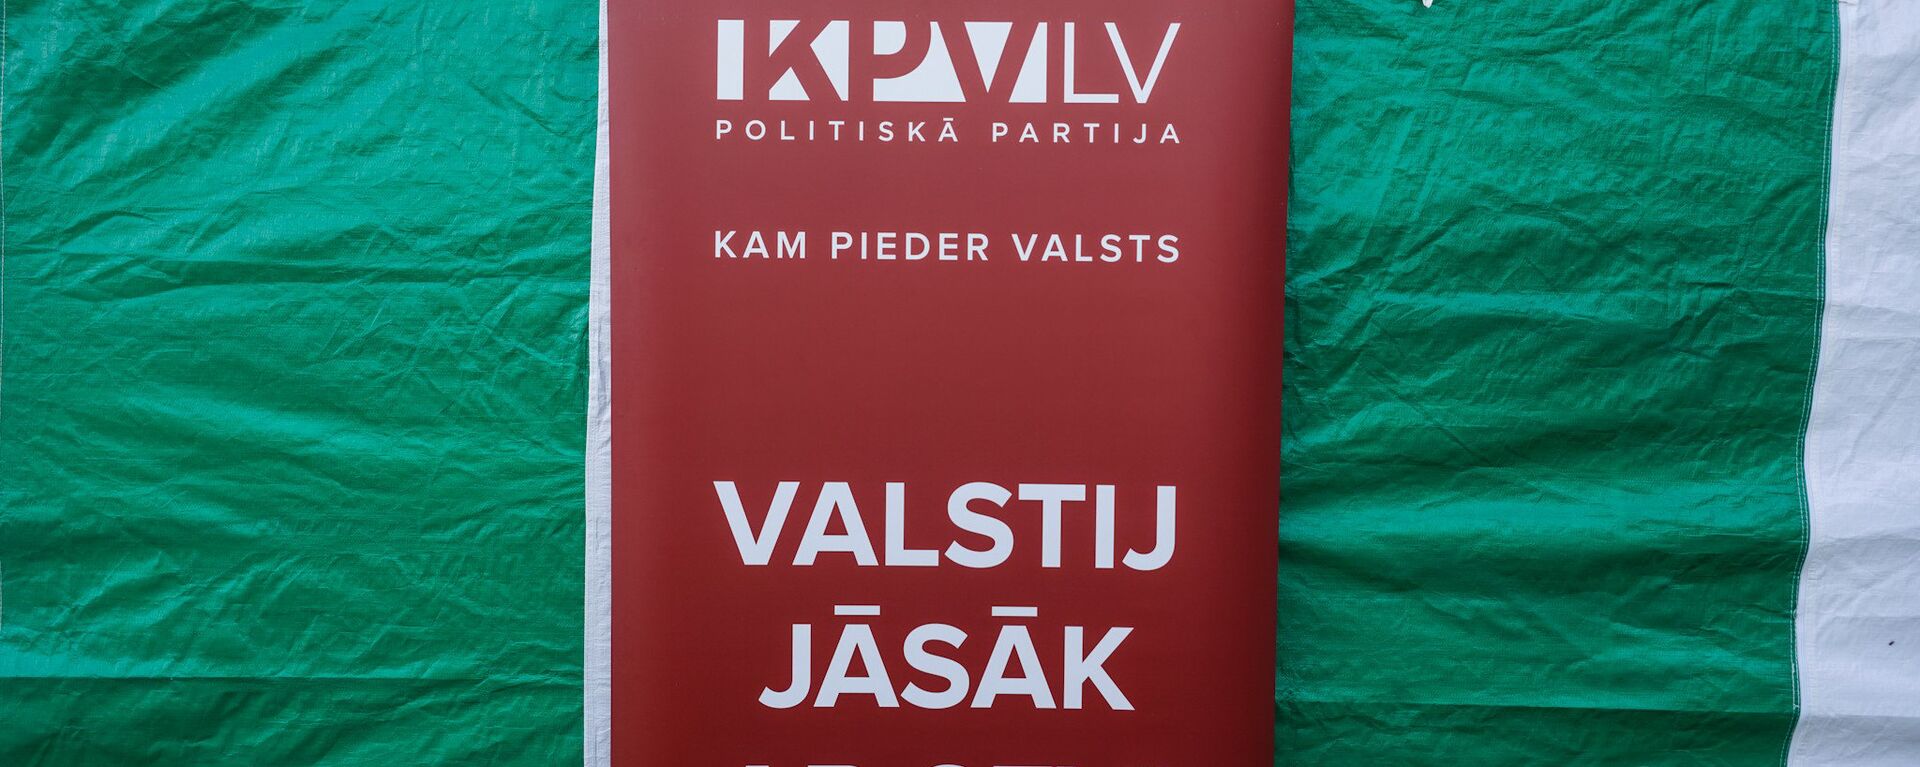 Политическая партия KPV LV - Sputnik Латвия, 1920, 26.04.2021